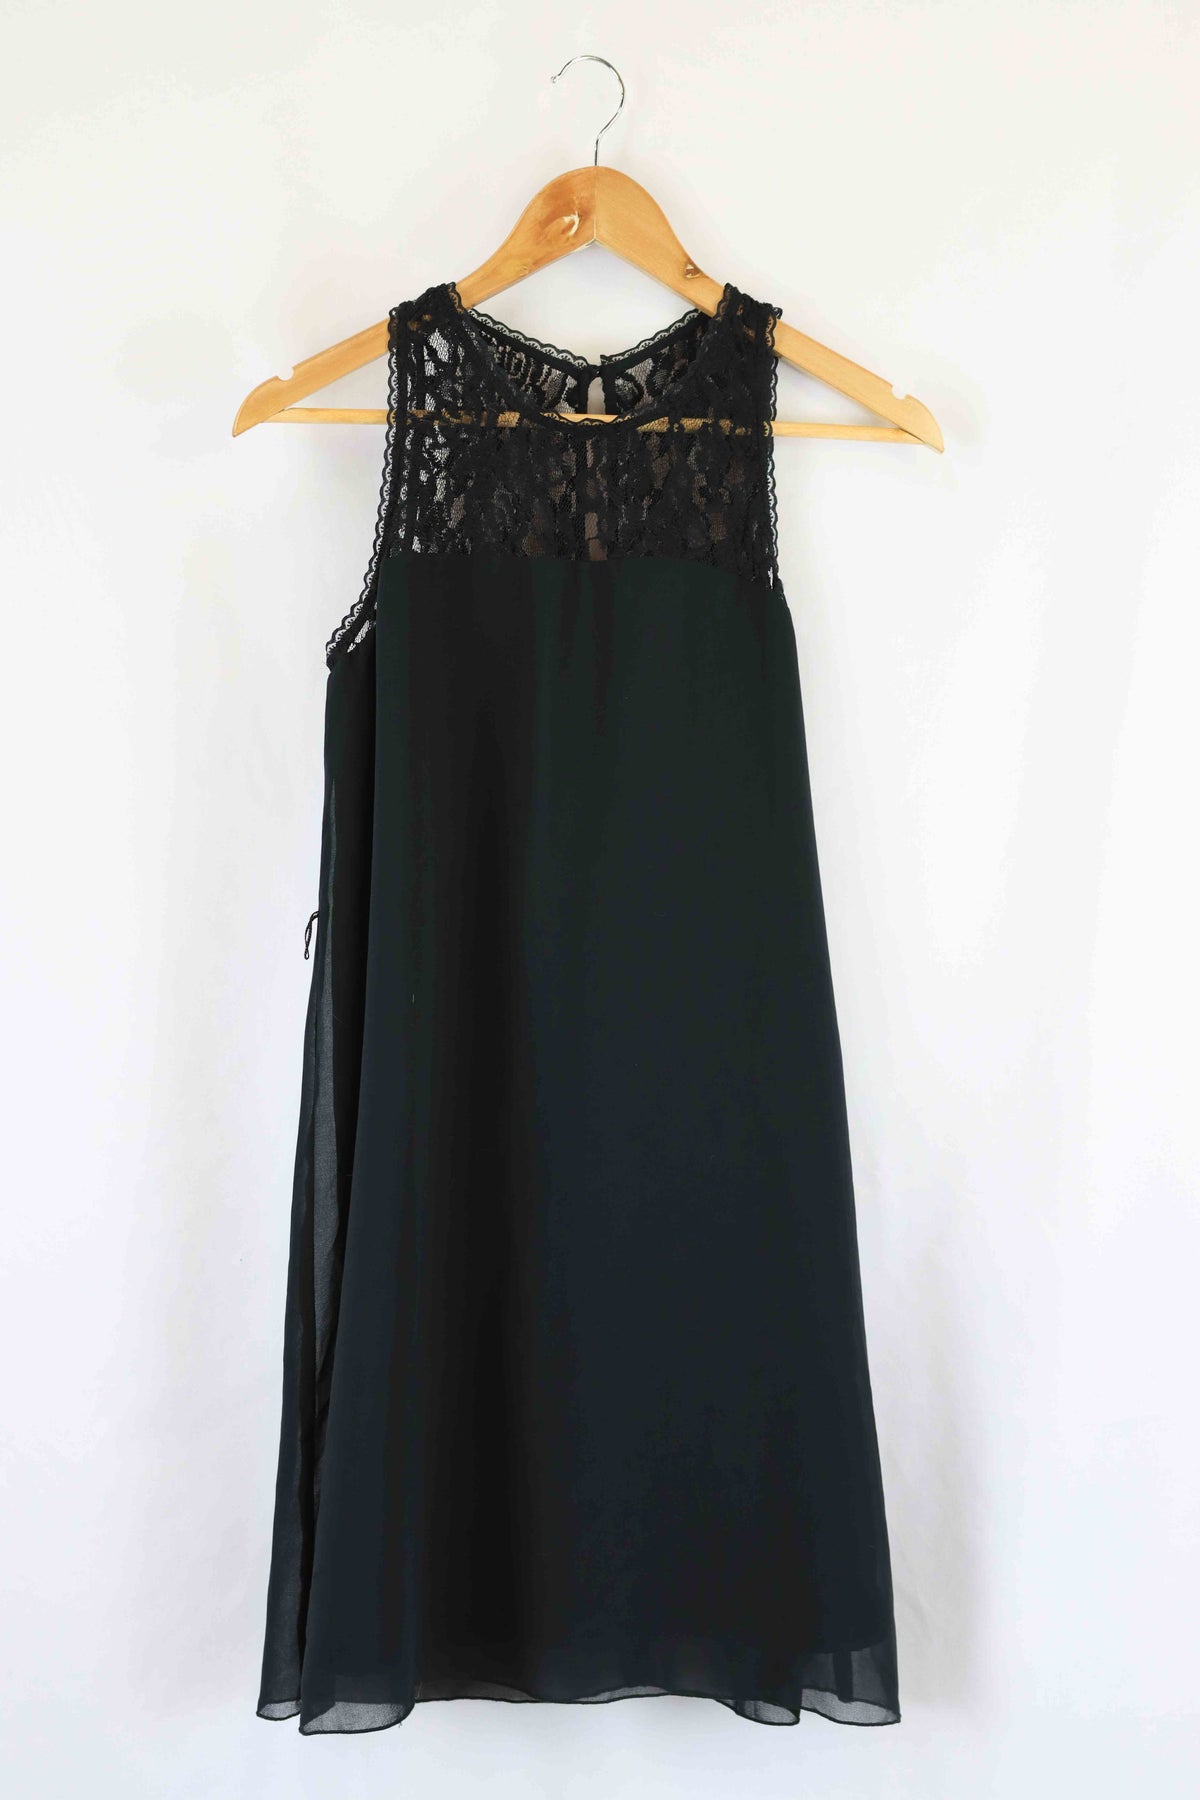 Kensie Black Lace Dress S